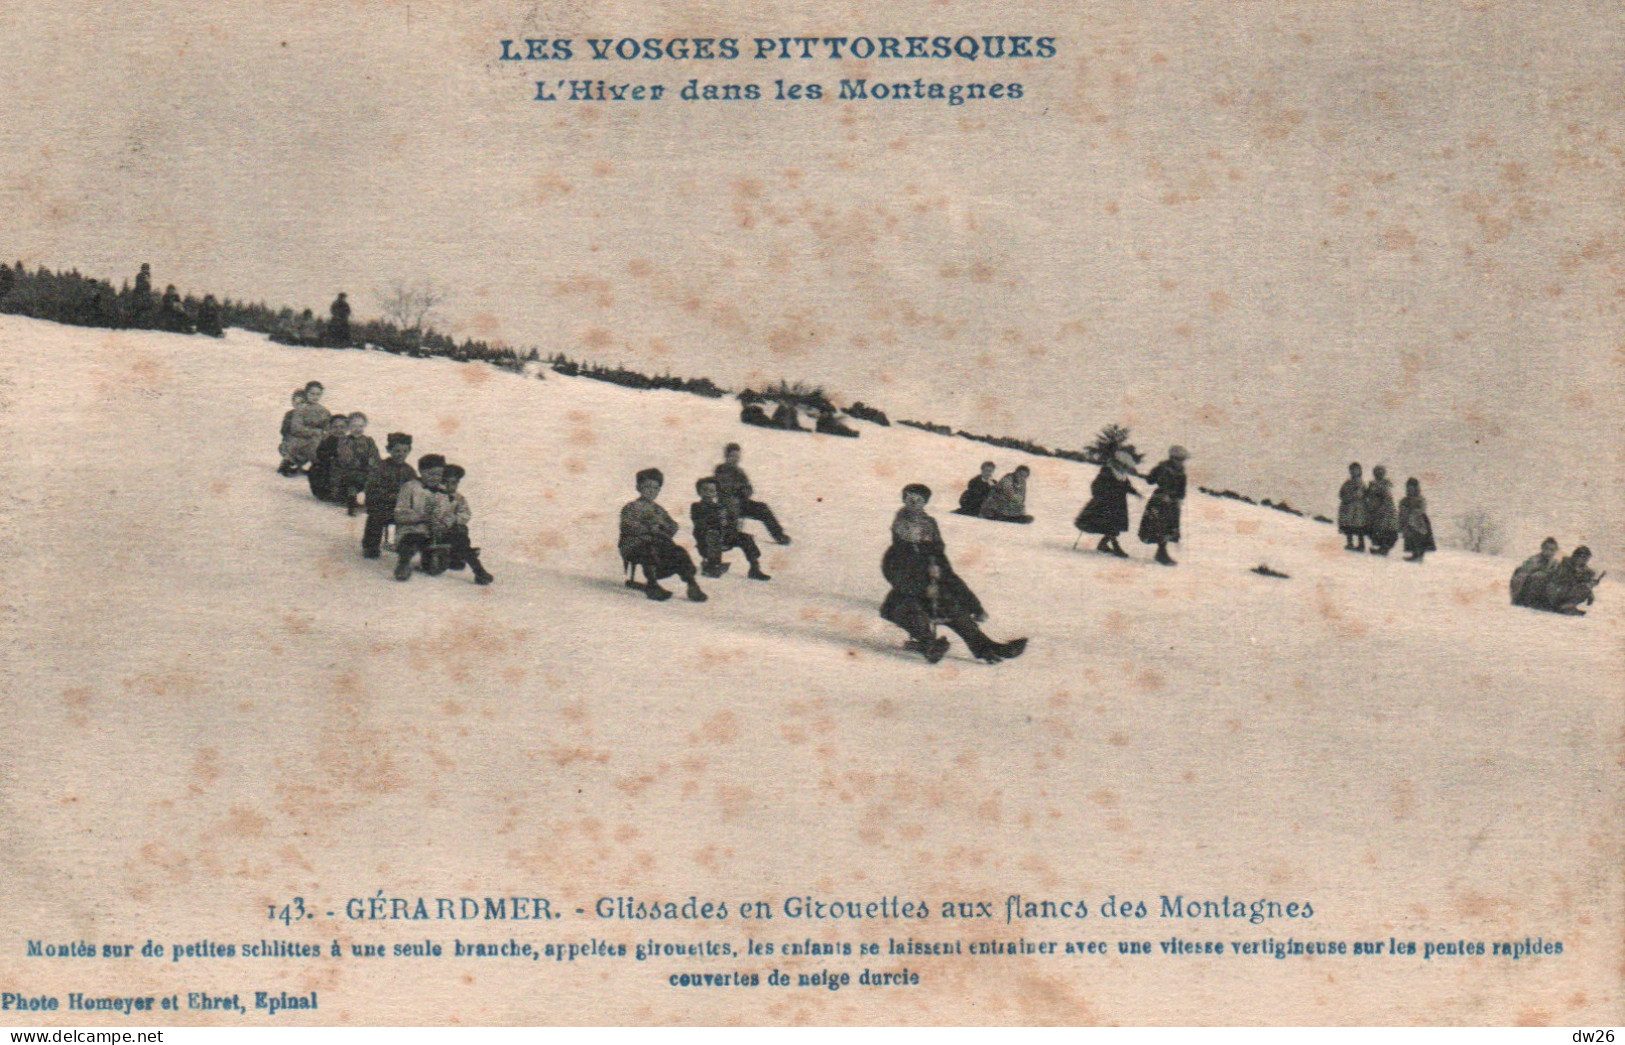 Sports D'Hiver Dans Les Montagnes (Vosges Pittoresques) Gérardmer: Glissades En Girouettes En Luge (Schlittes) - Winter Sports